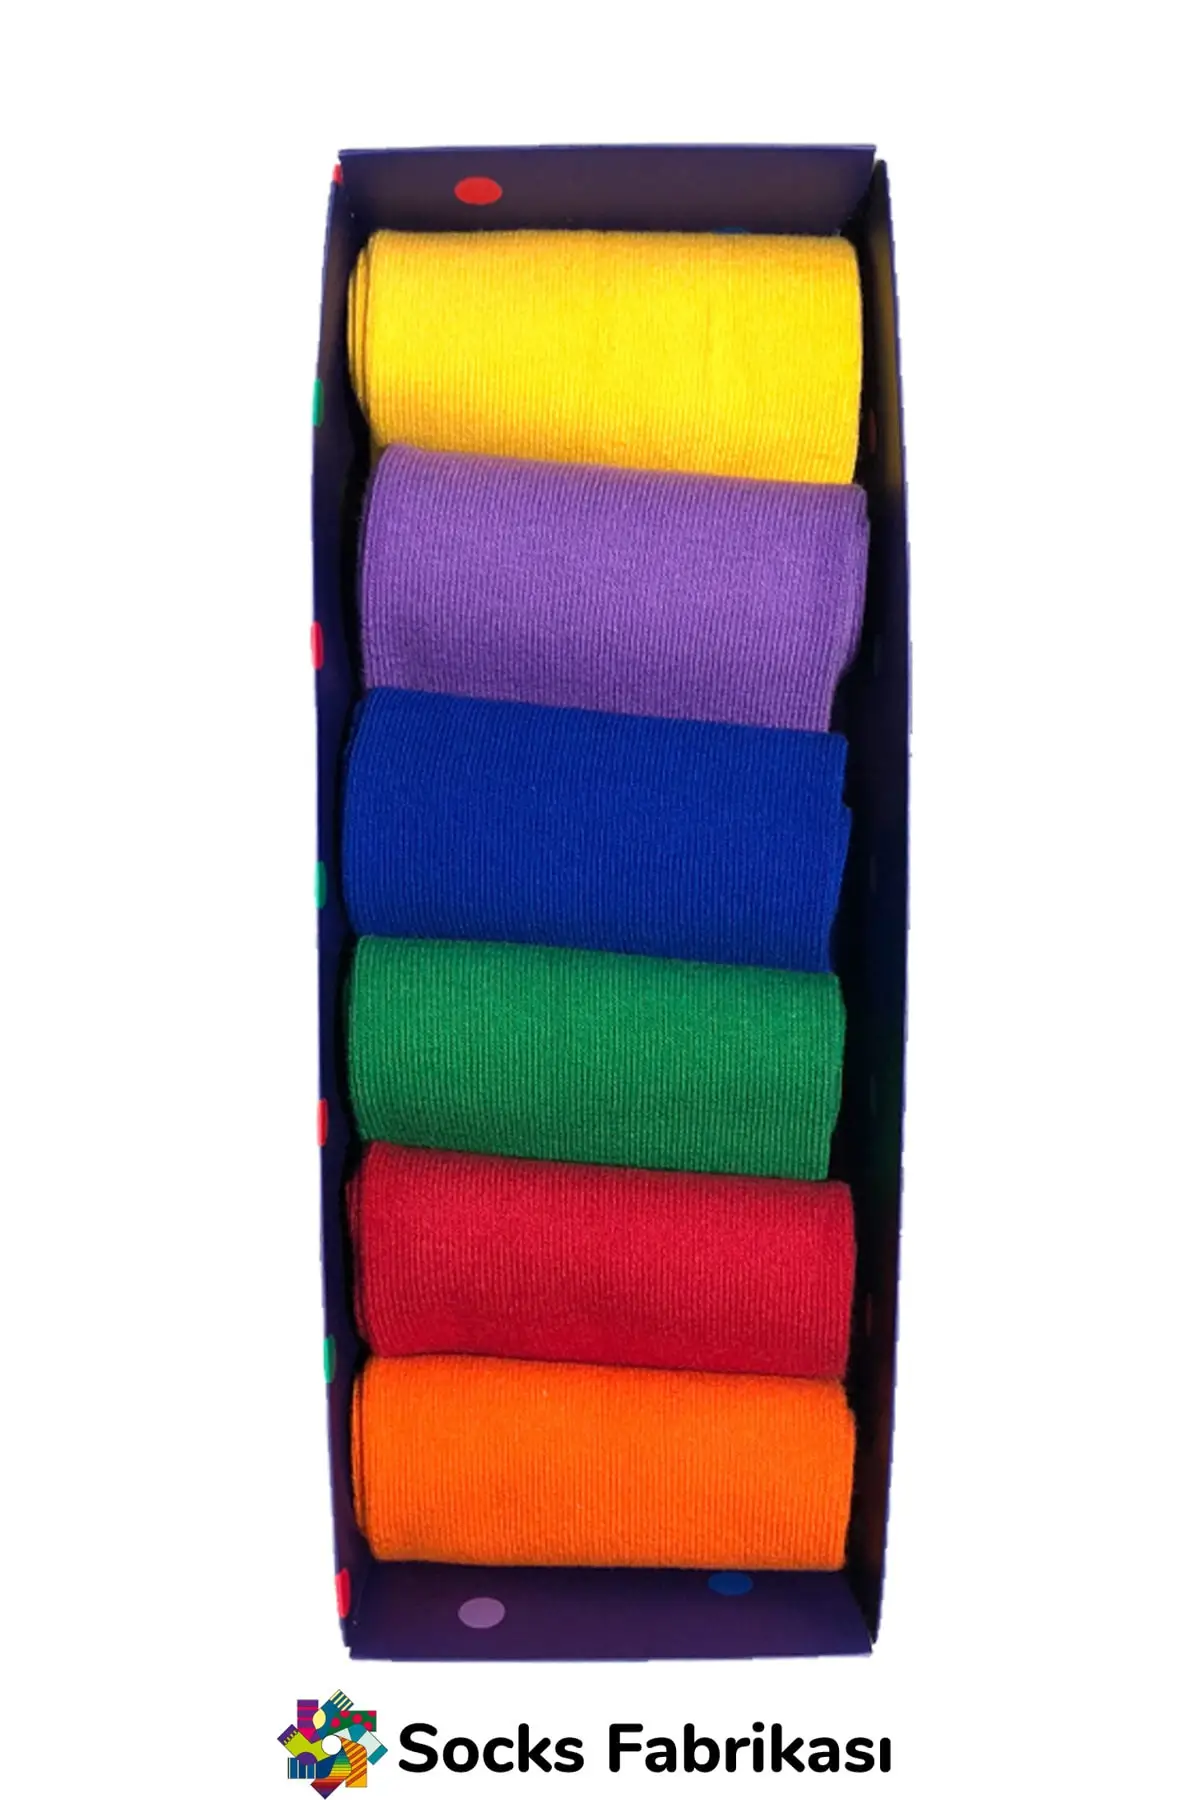 Разноцветная коробка для носков 6 дюймов от AliExpress RU&CIS NEW